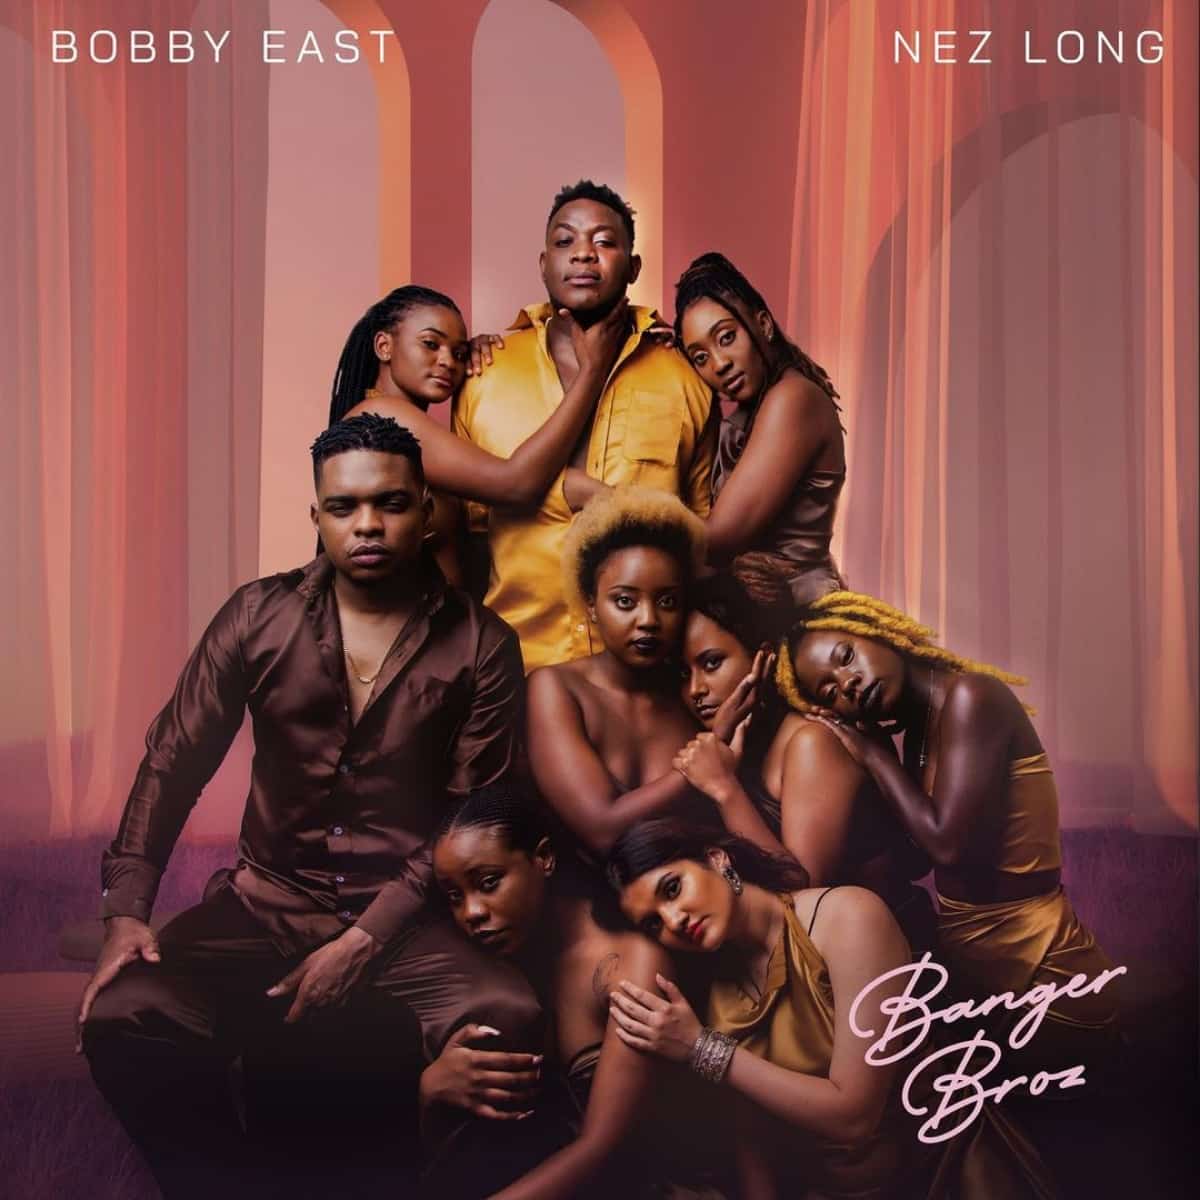 DOWNLOAD ALBUM: Bobby East & Nez Long – “Banger Broz” | Full Album